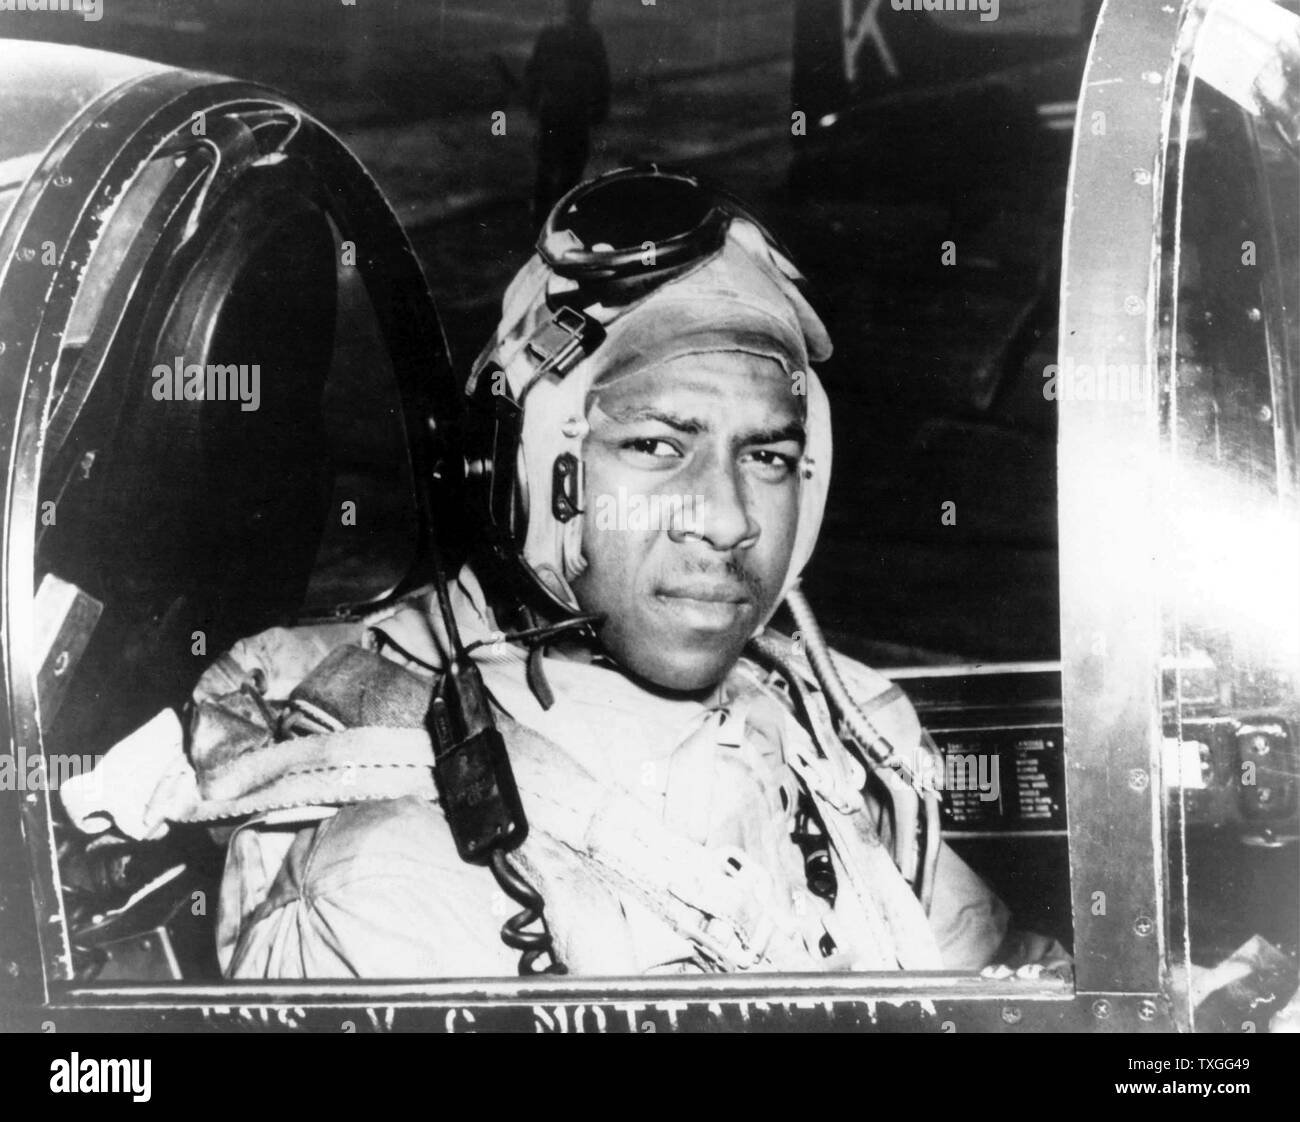 Ensign Jesse L. Brown, sitzen im Cockpit einer F4U-4 Corsair Jagdflugzeug, erste schwarze Marineflieger der US Navy. Während in Korea, wurde er in der Tätigkeit getötet und posthum mit das Distinguished Flying Cross ausgezeichnet. Stockfoto